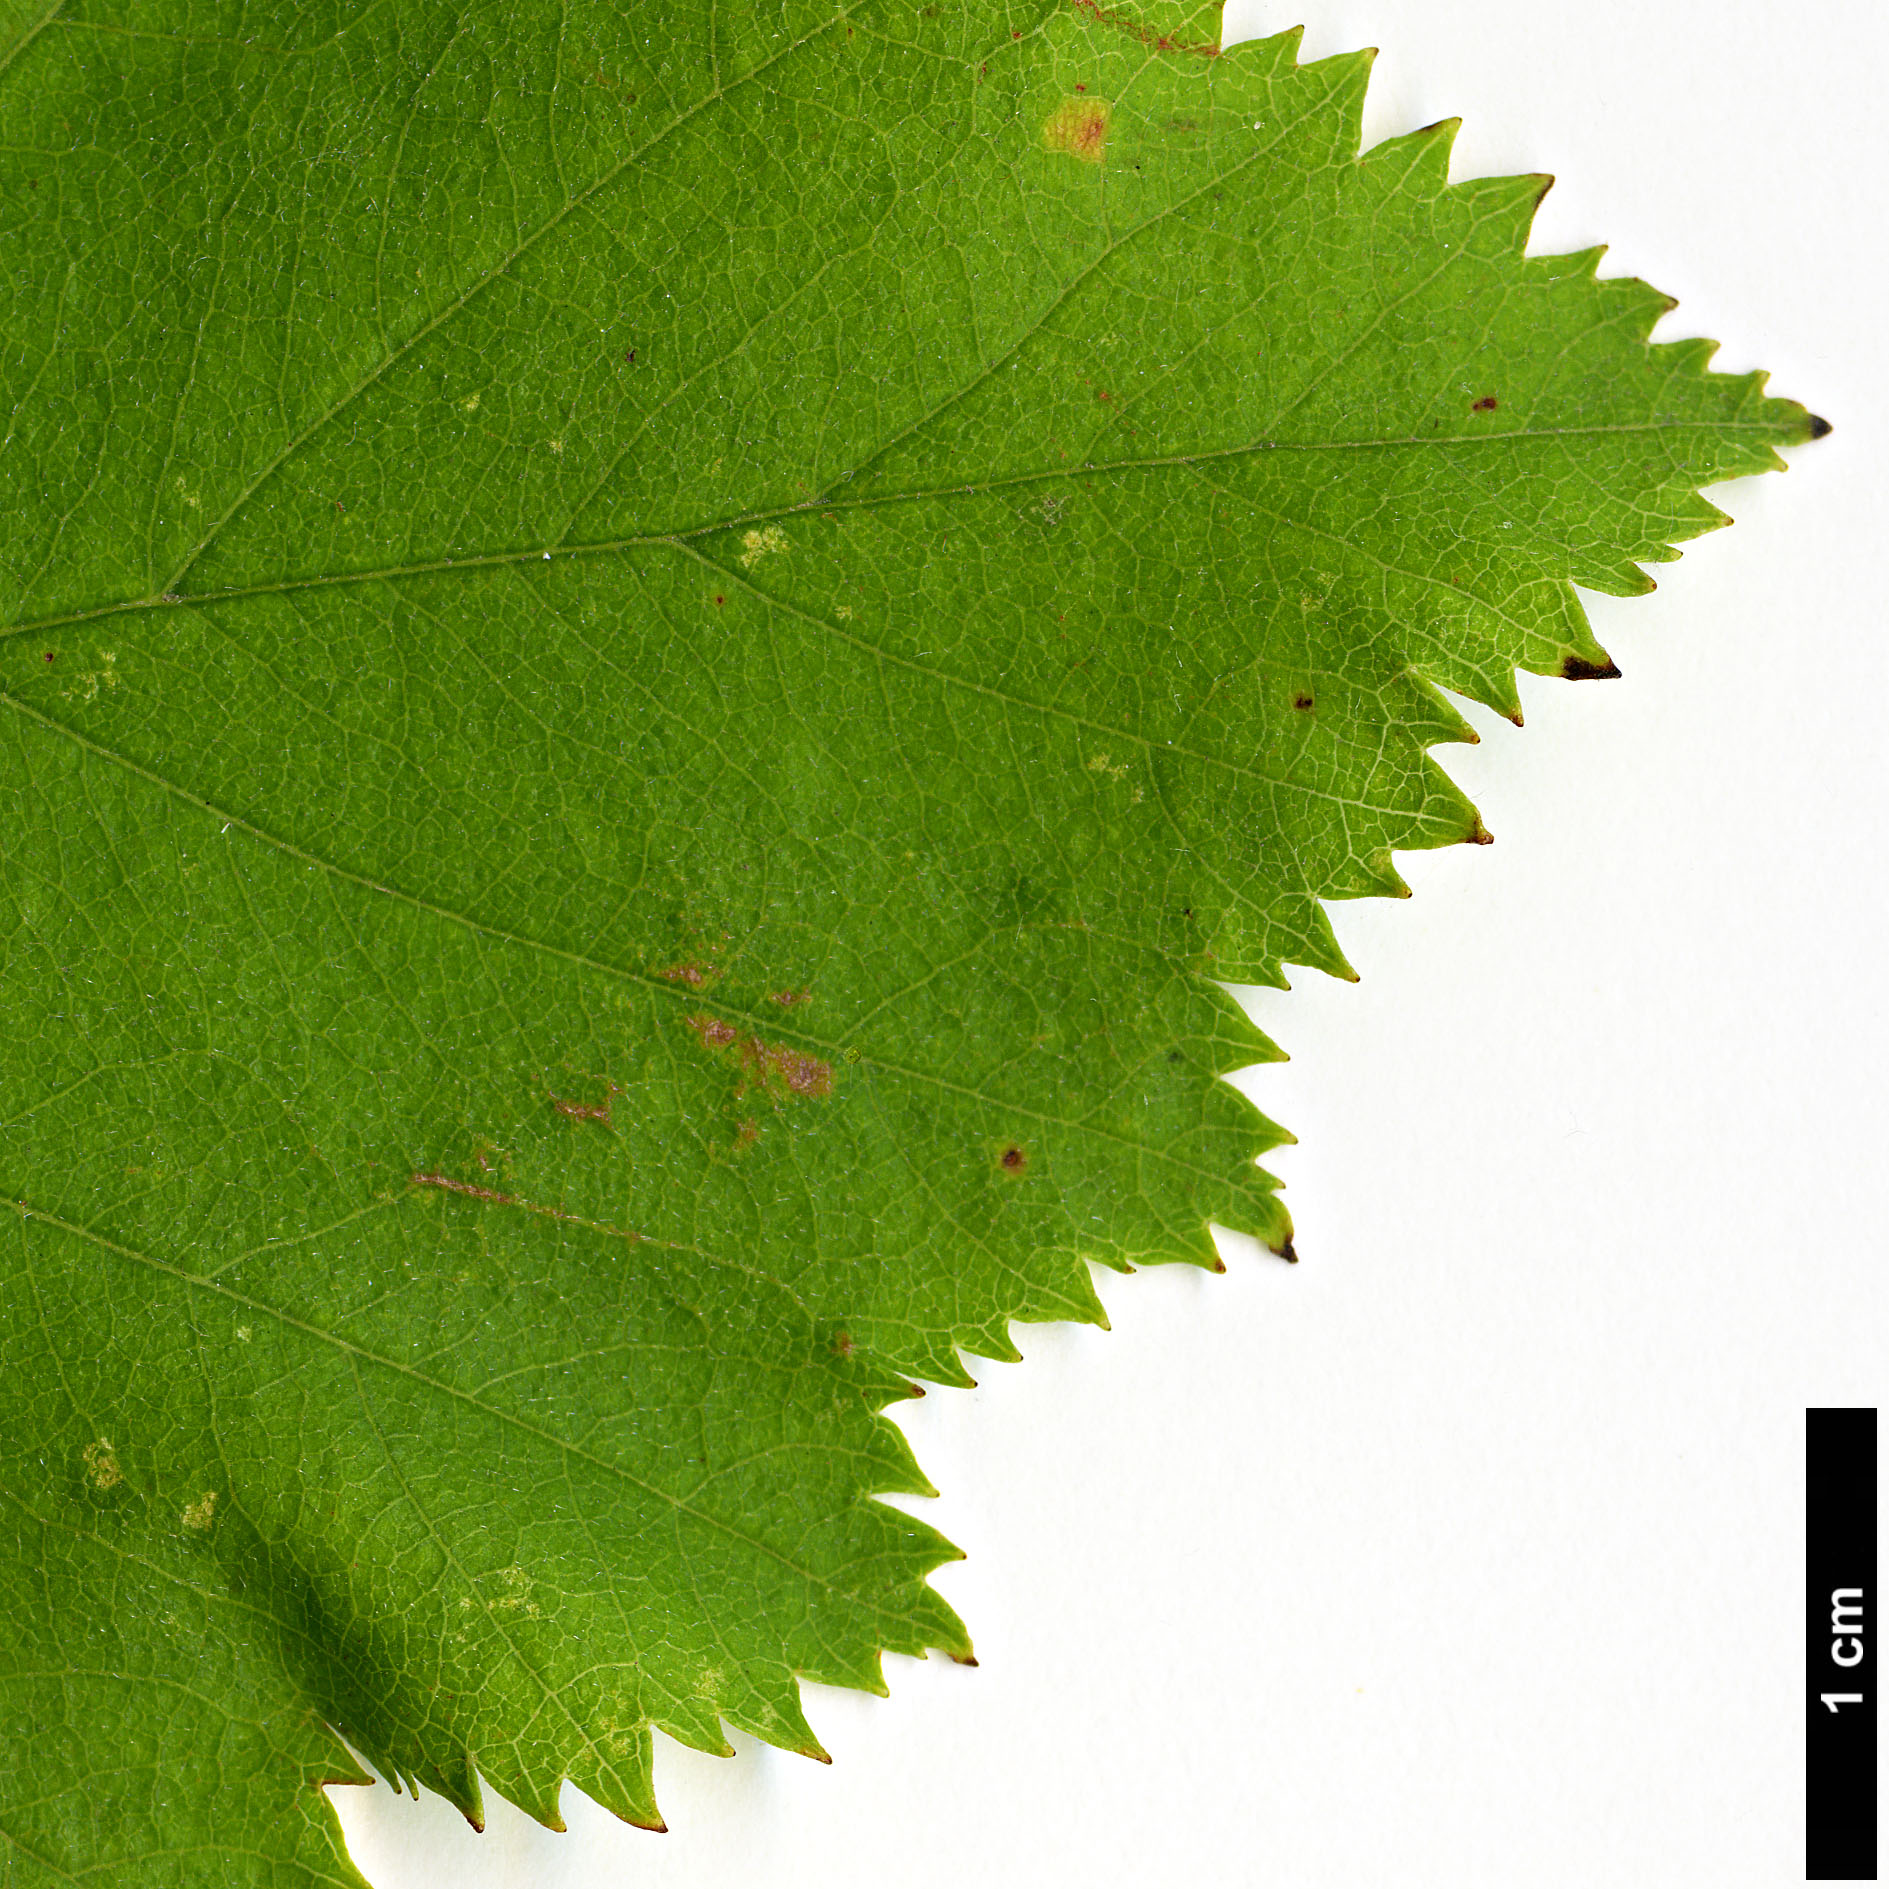 High resolution image: Family: Rosaceae - Genus: Crataegus - Taxon: pedicellata